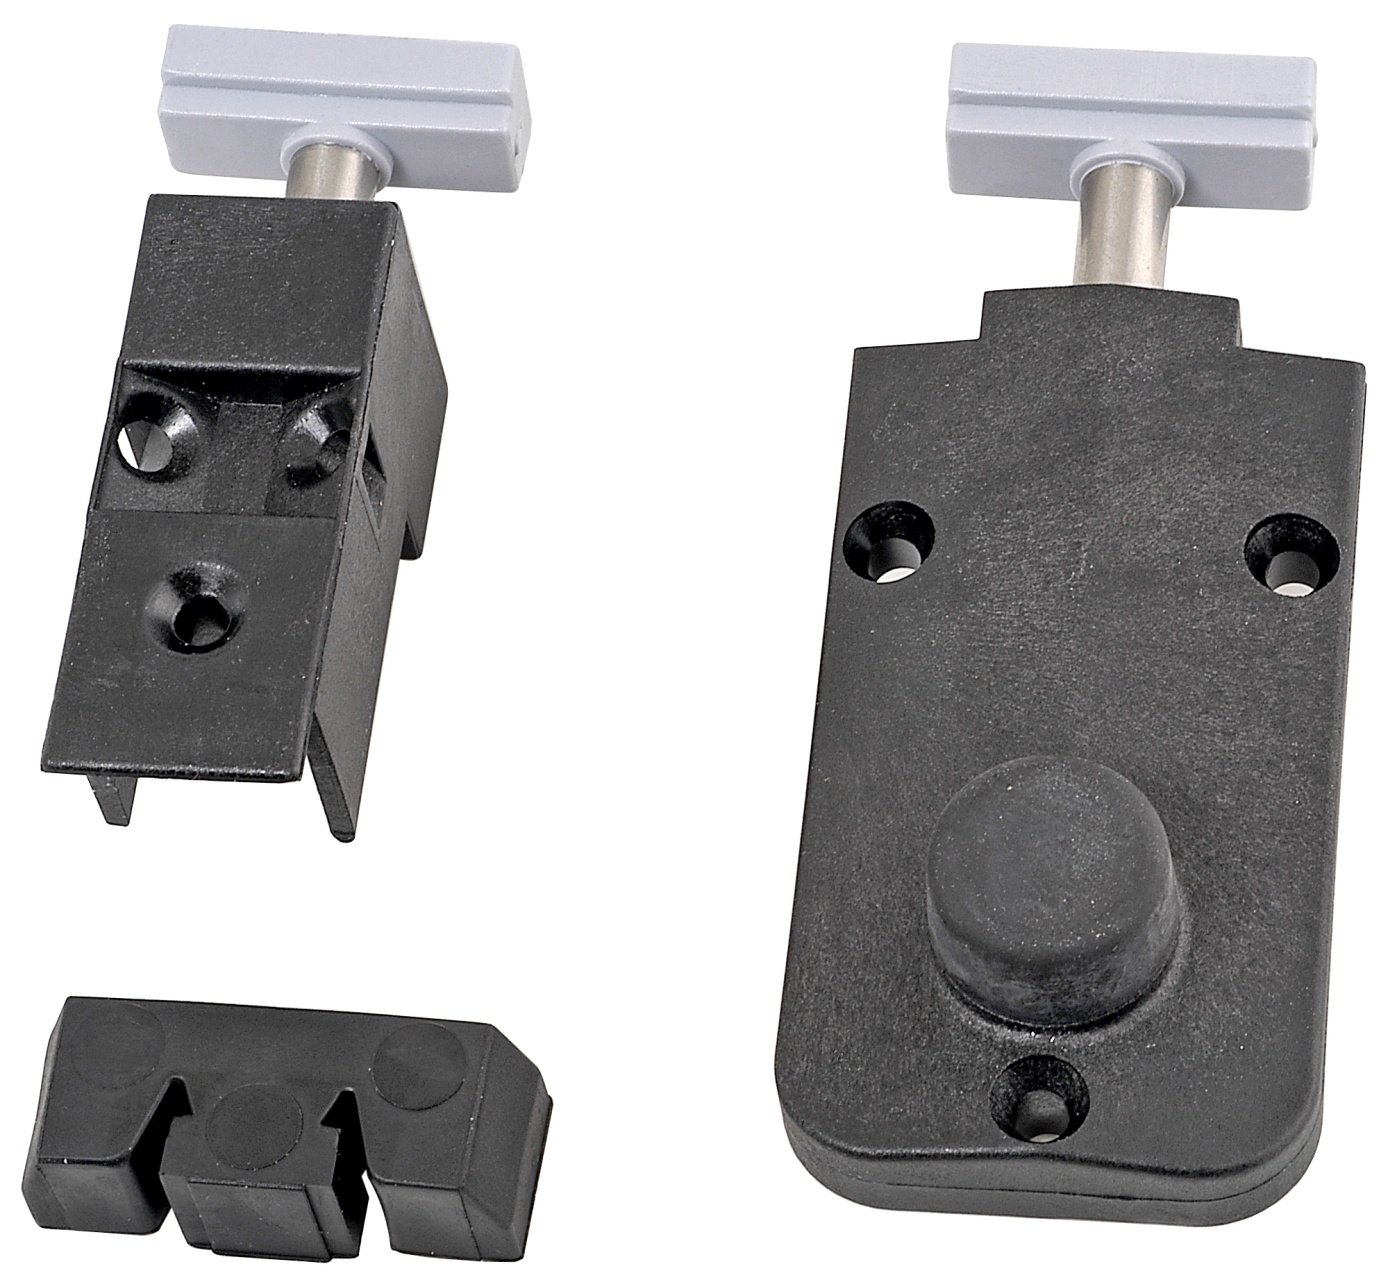 AGB - Kit Tappo ALZANTE CLASSIC superiore confezione accessori guida per alzante scorrevole - col. NERO - BLACK POWERAGE - note SCHEMA A/C